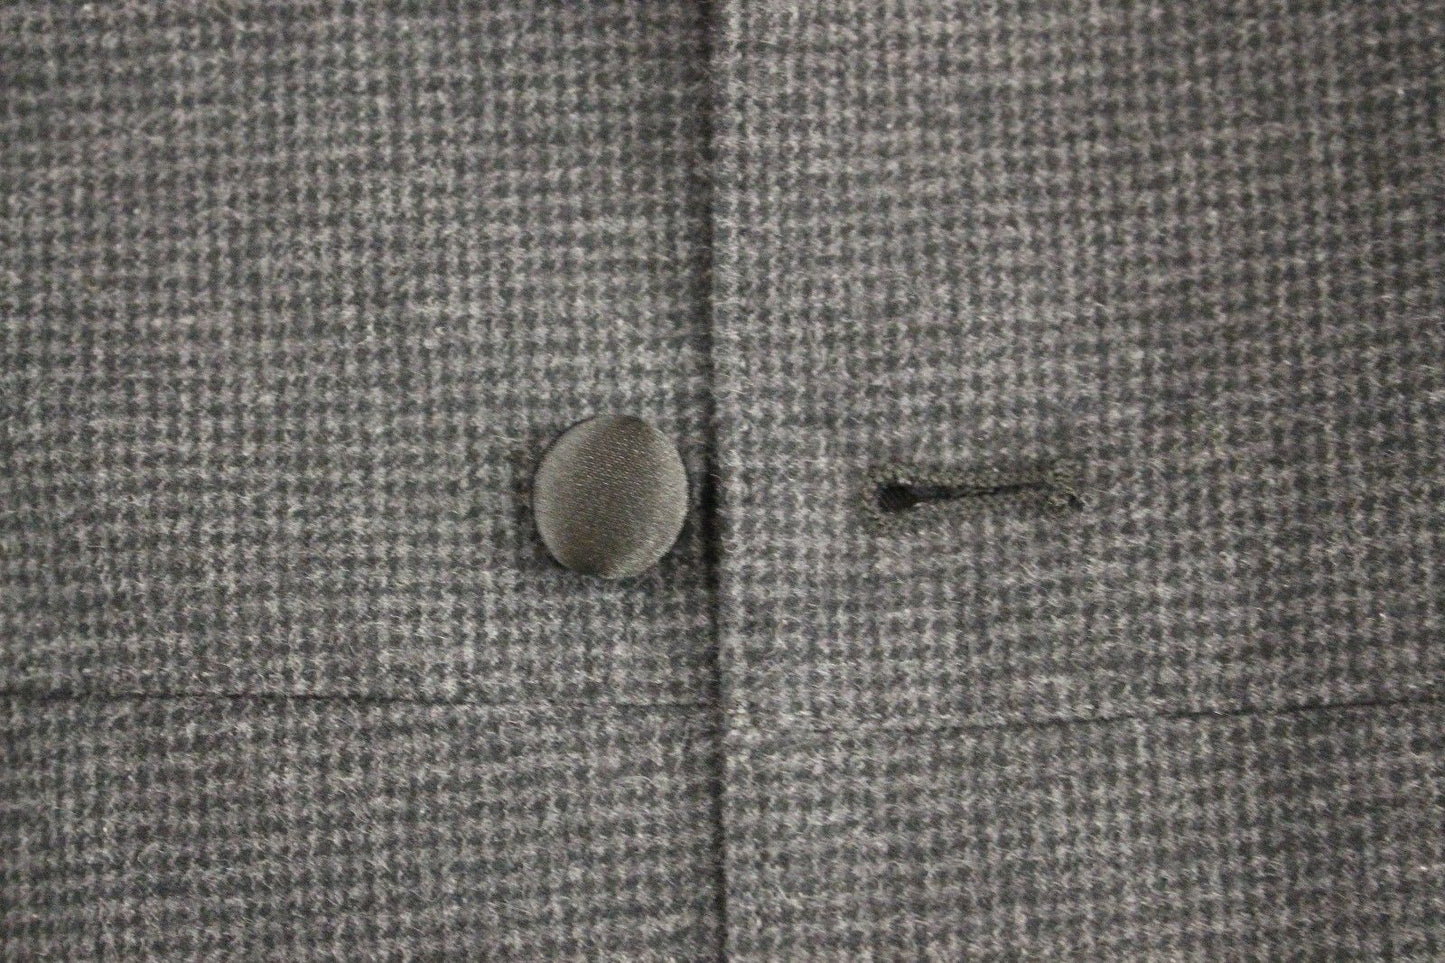 Gray Wool Silk Dress Vest Gilet Weste